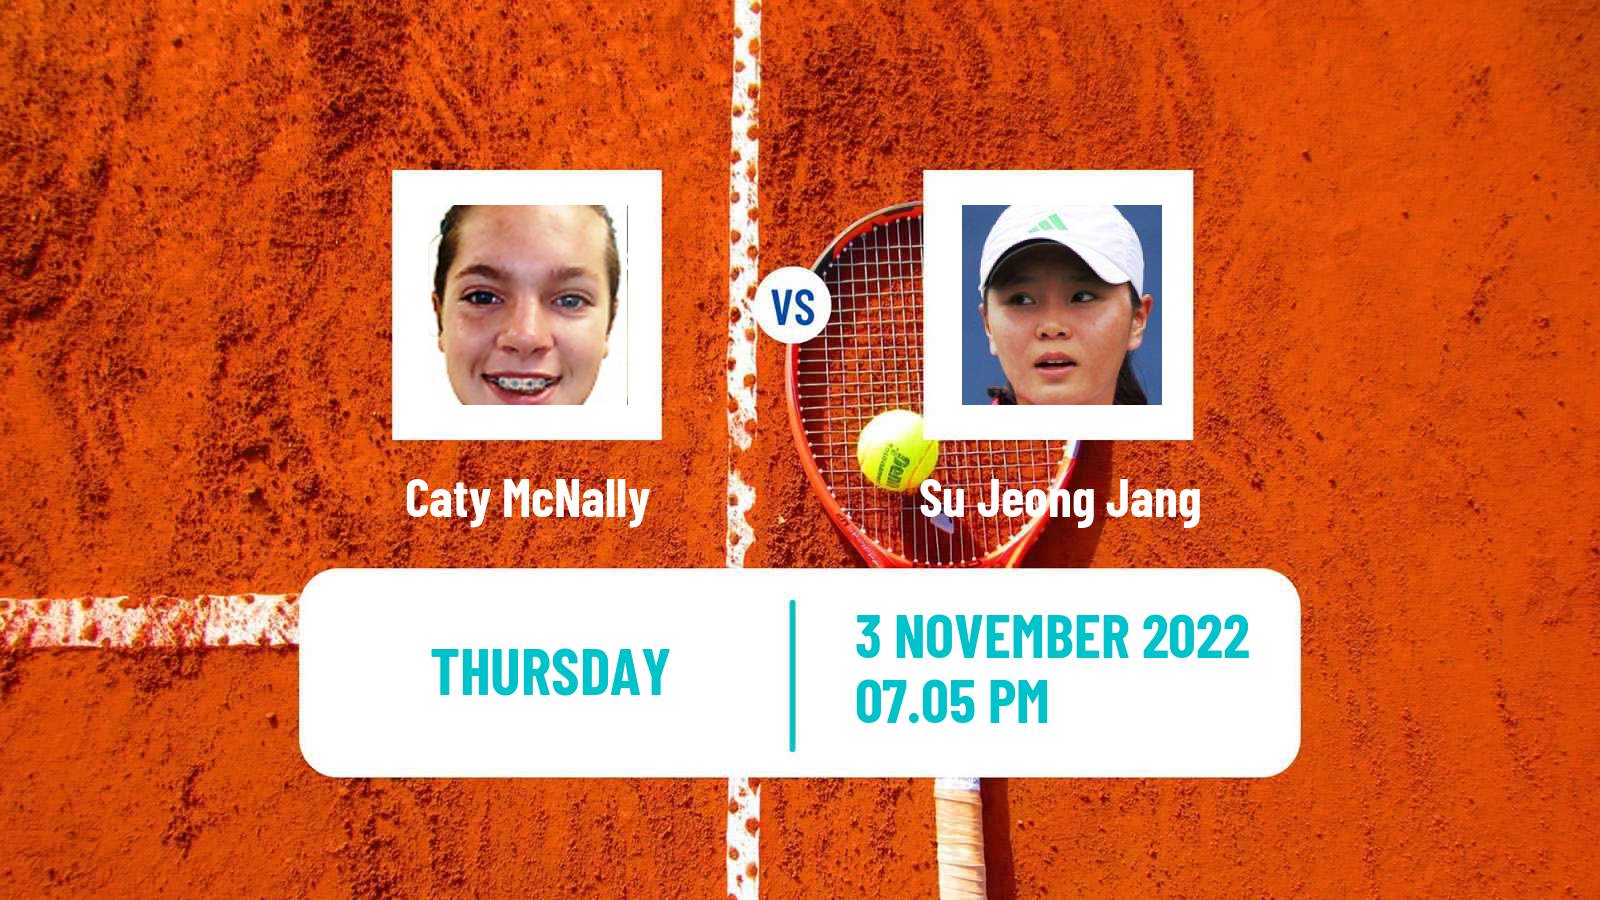 Tennis ATP Challenger Caty McNally - Su Jeong Jang